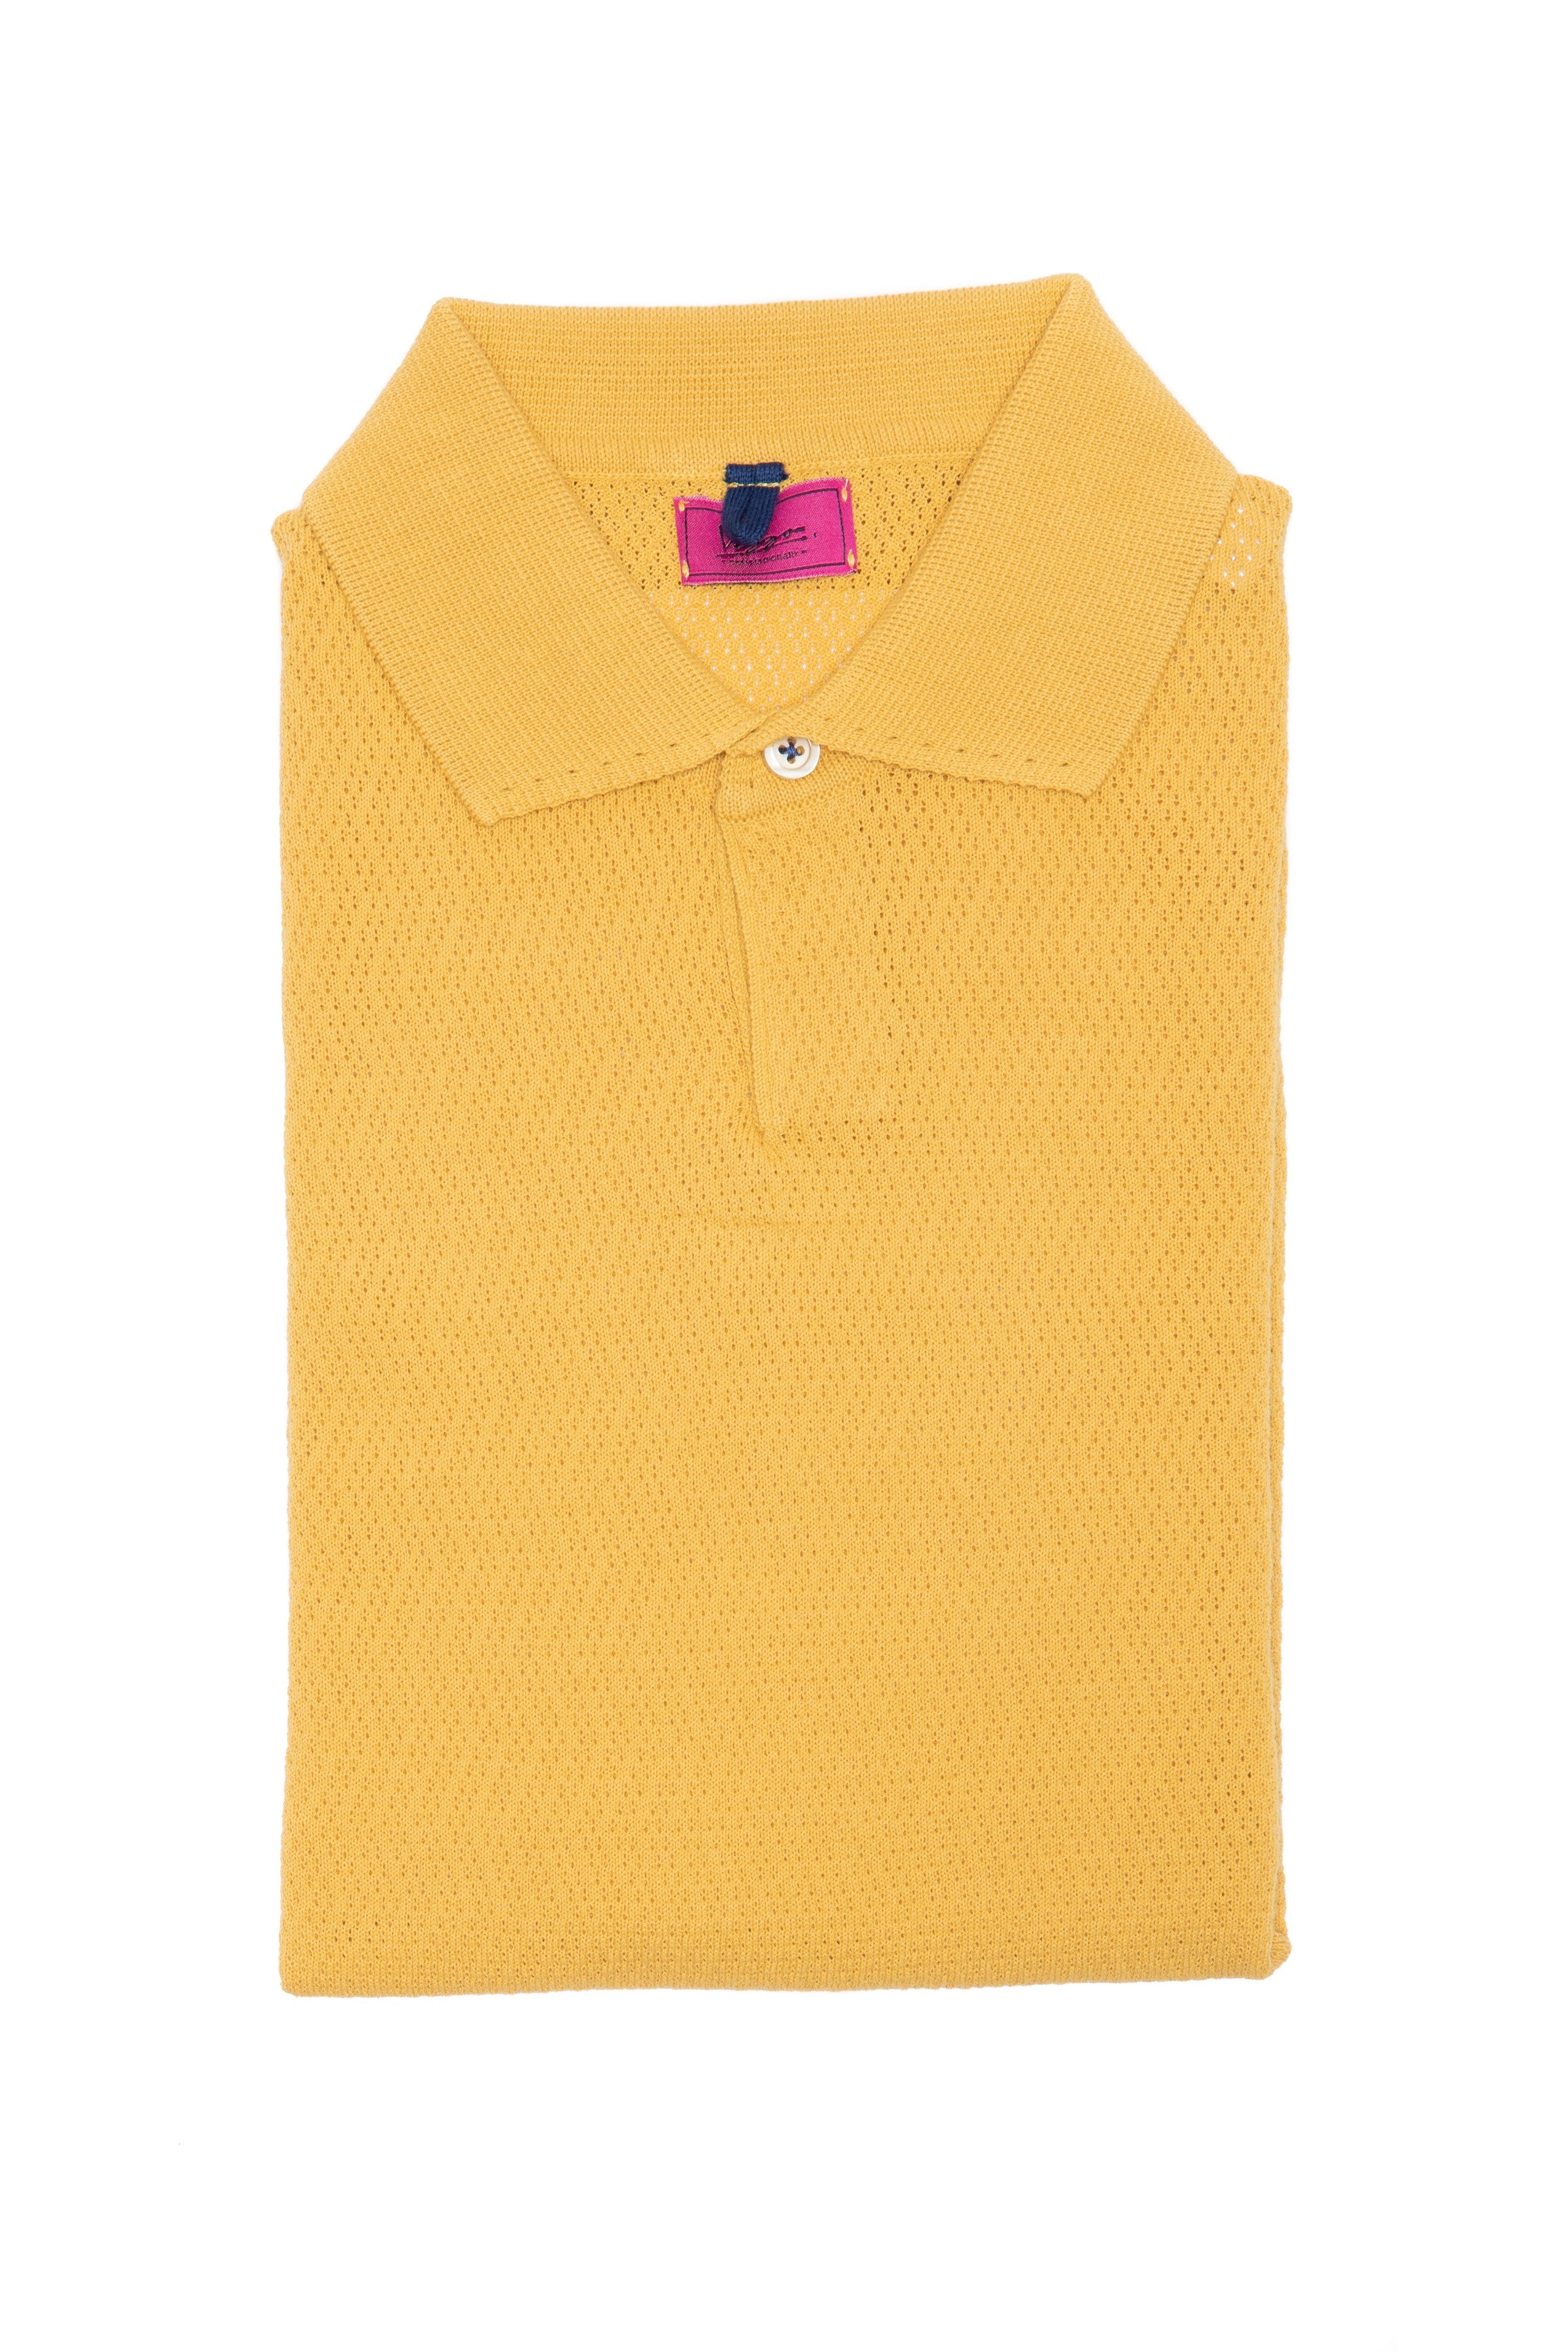 T-shirt casual gialla con collo a polo